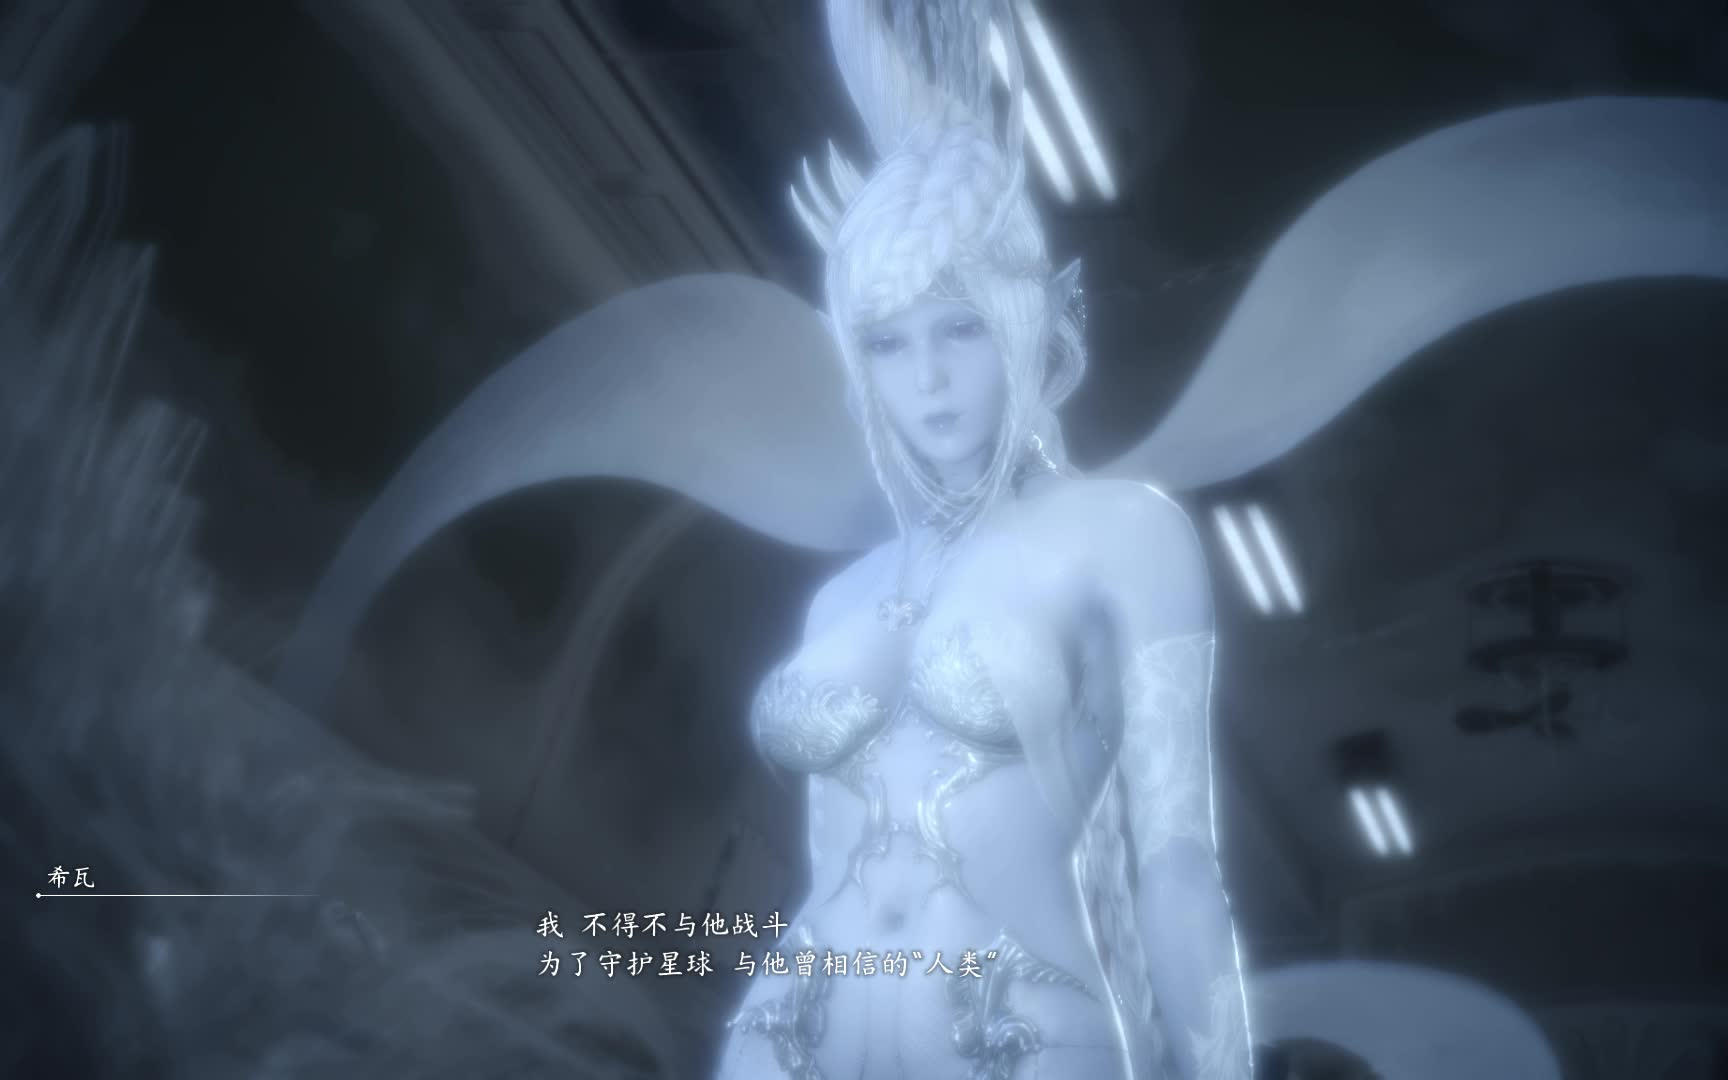 最终幻想15:冰神小姐姐第一次霸气出场,太美啦吧.